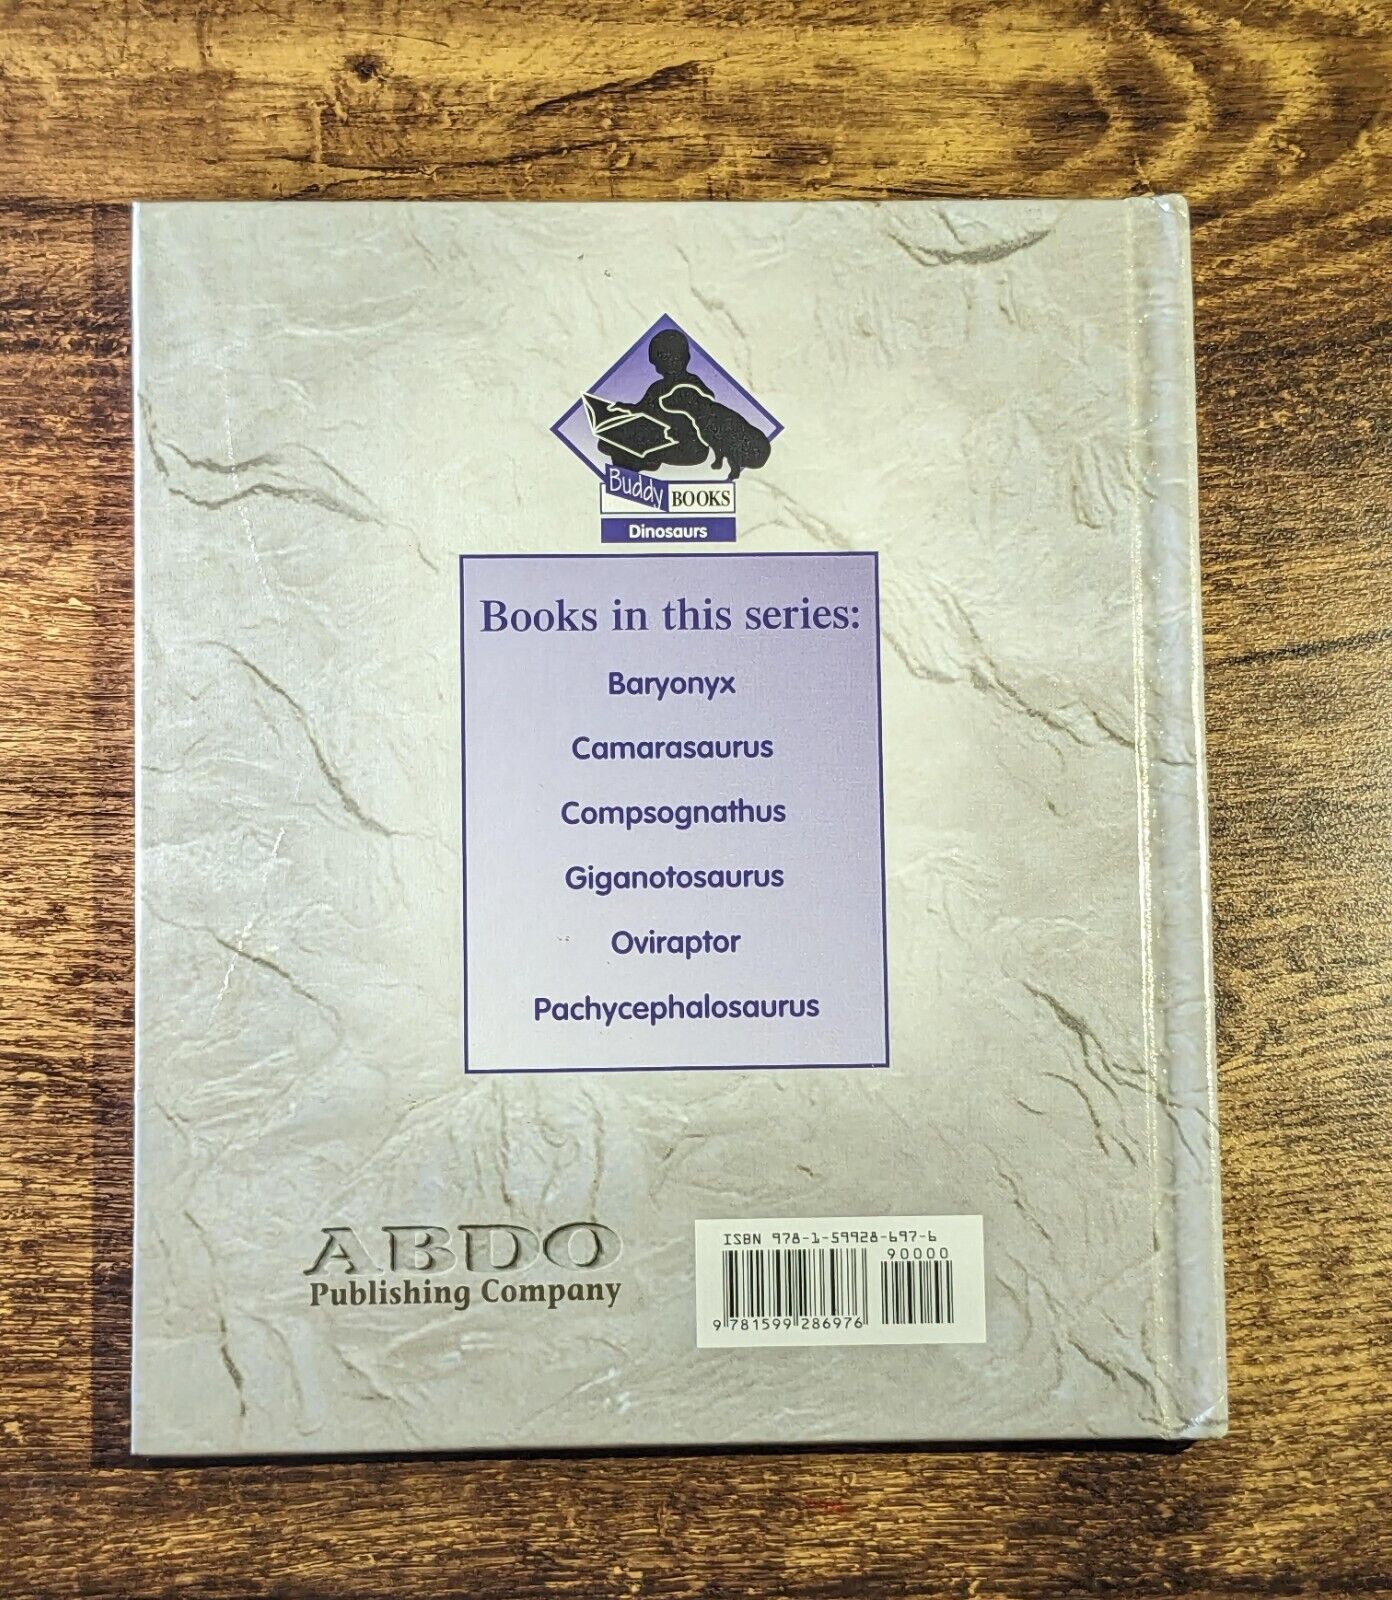 Giganotosaurus by Goecke, Michael P. (Hardcover) - Asylum Books